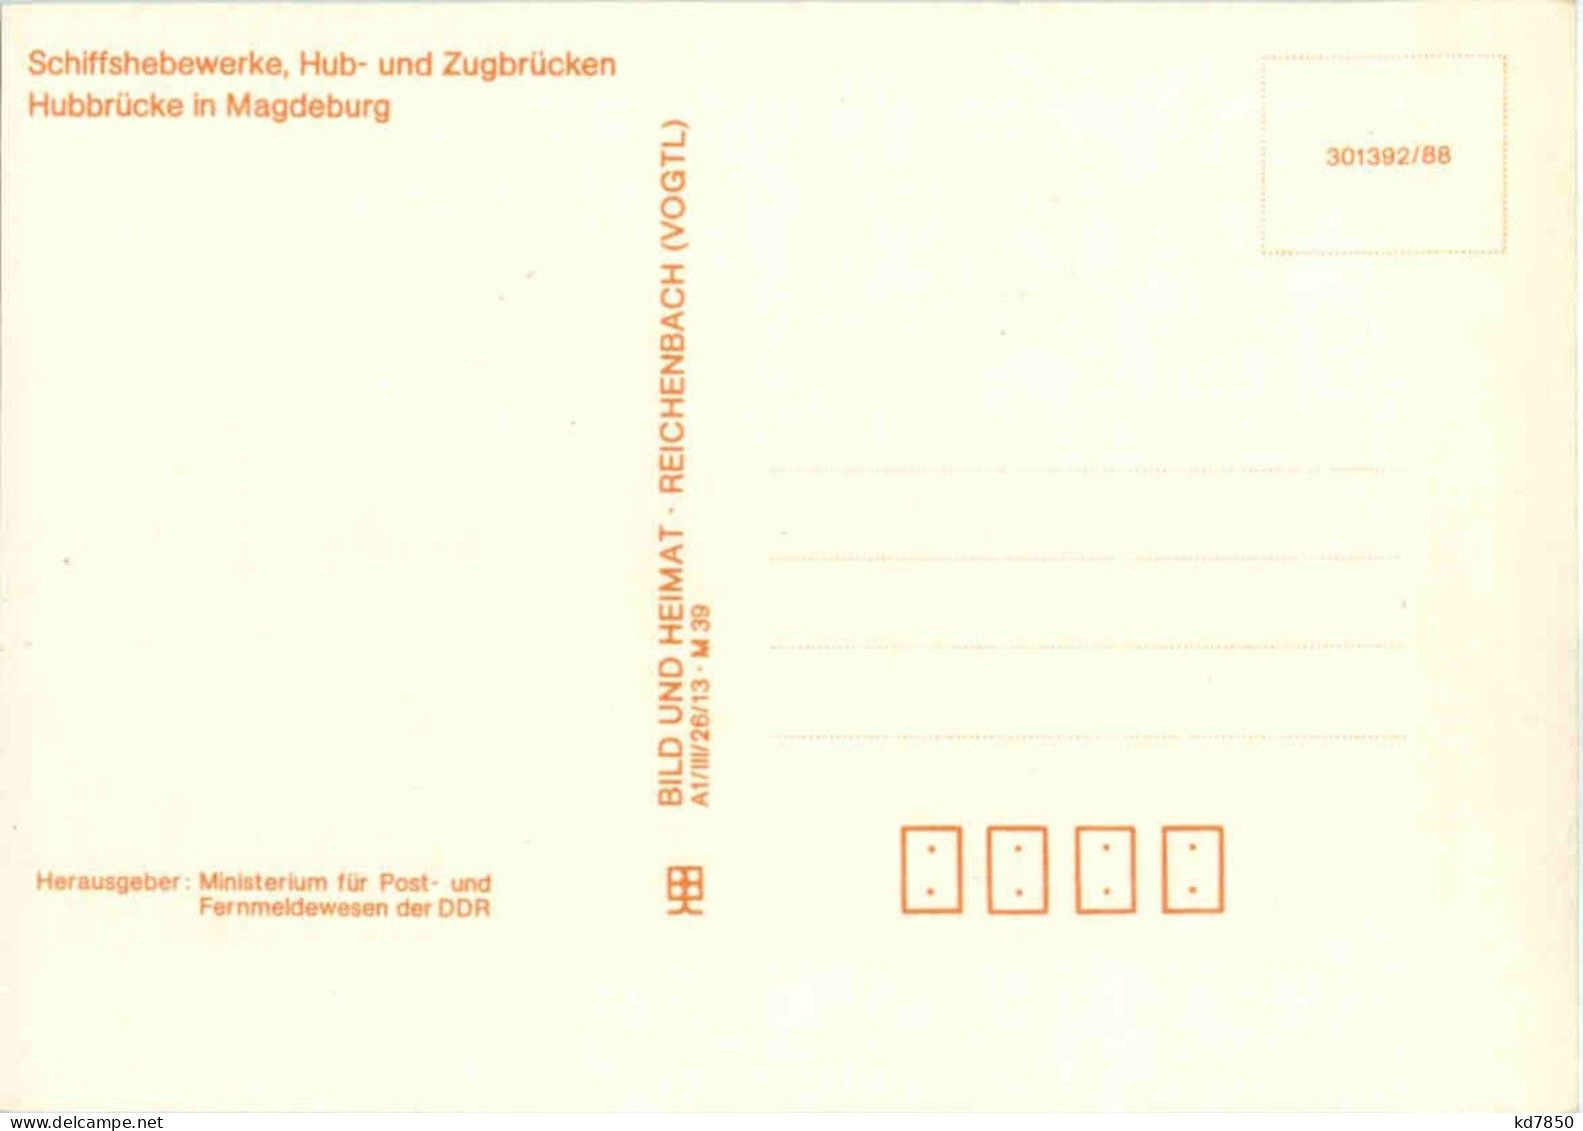 DDR - Maximum Card - Maximumkaarten